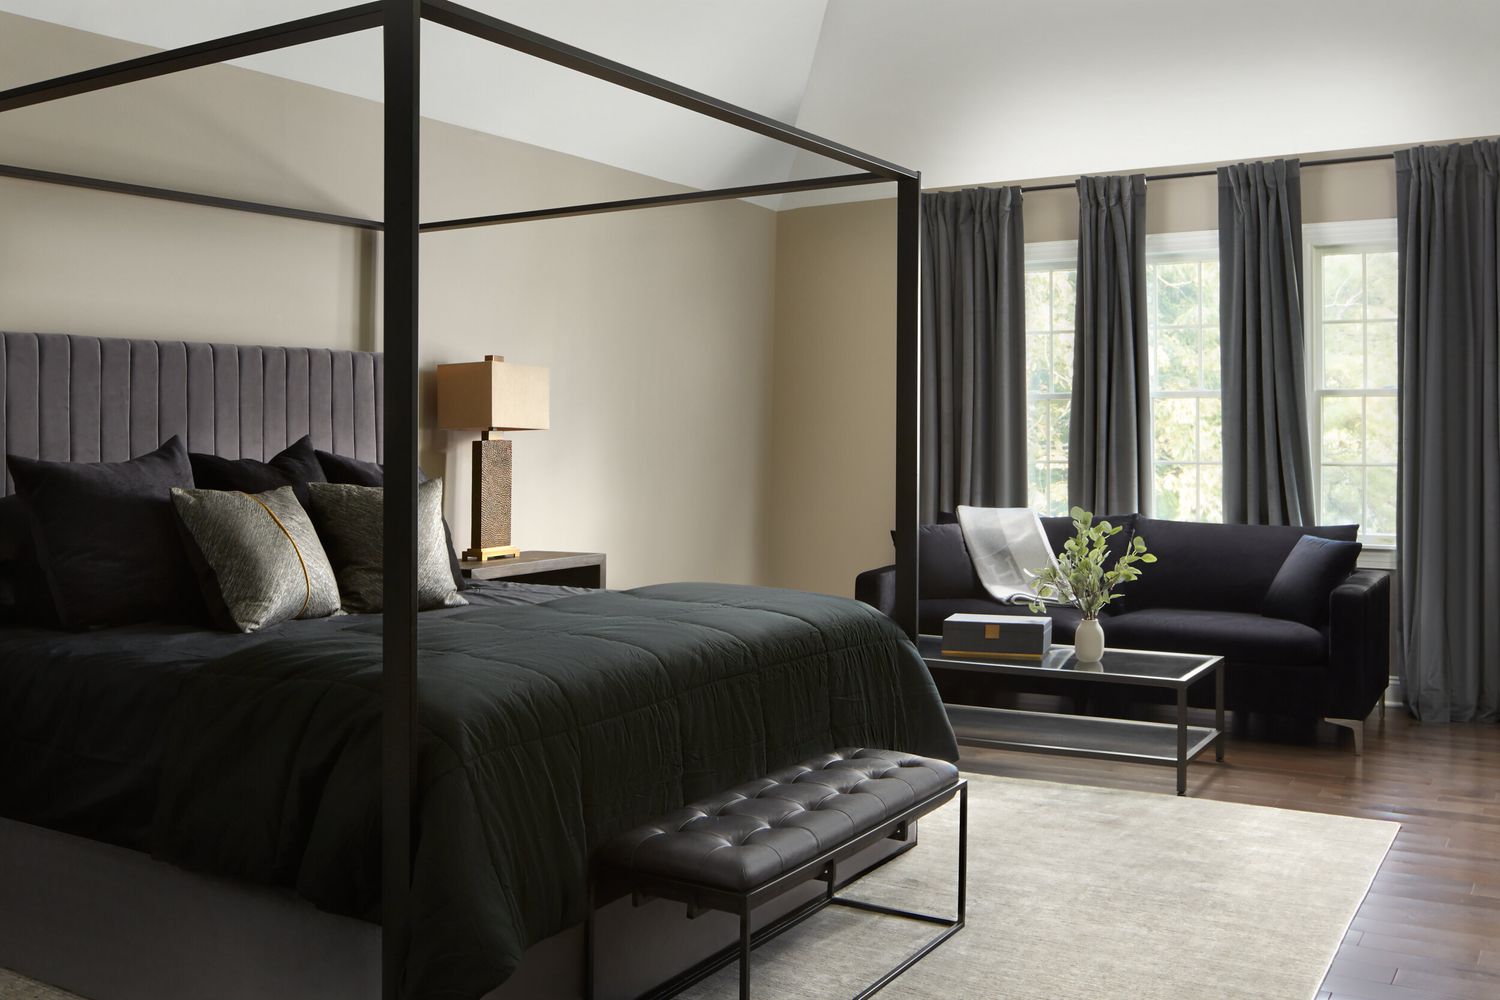 quarto neutro com roupa de cama e estrutura pretas, cabeceira e cortinas cinza